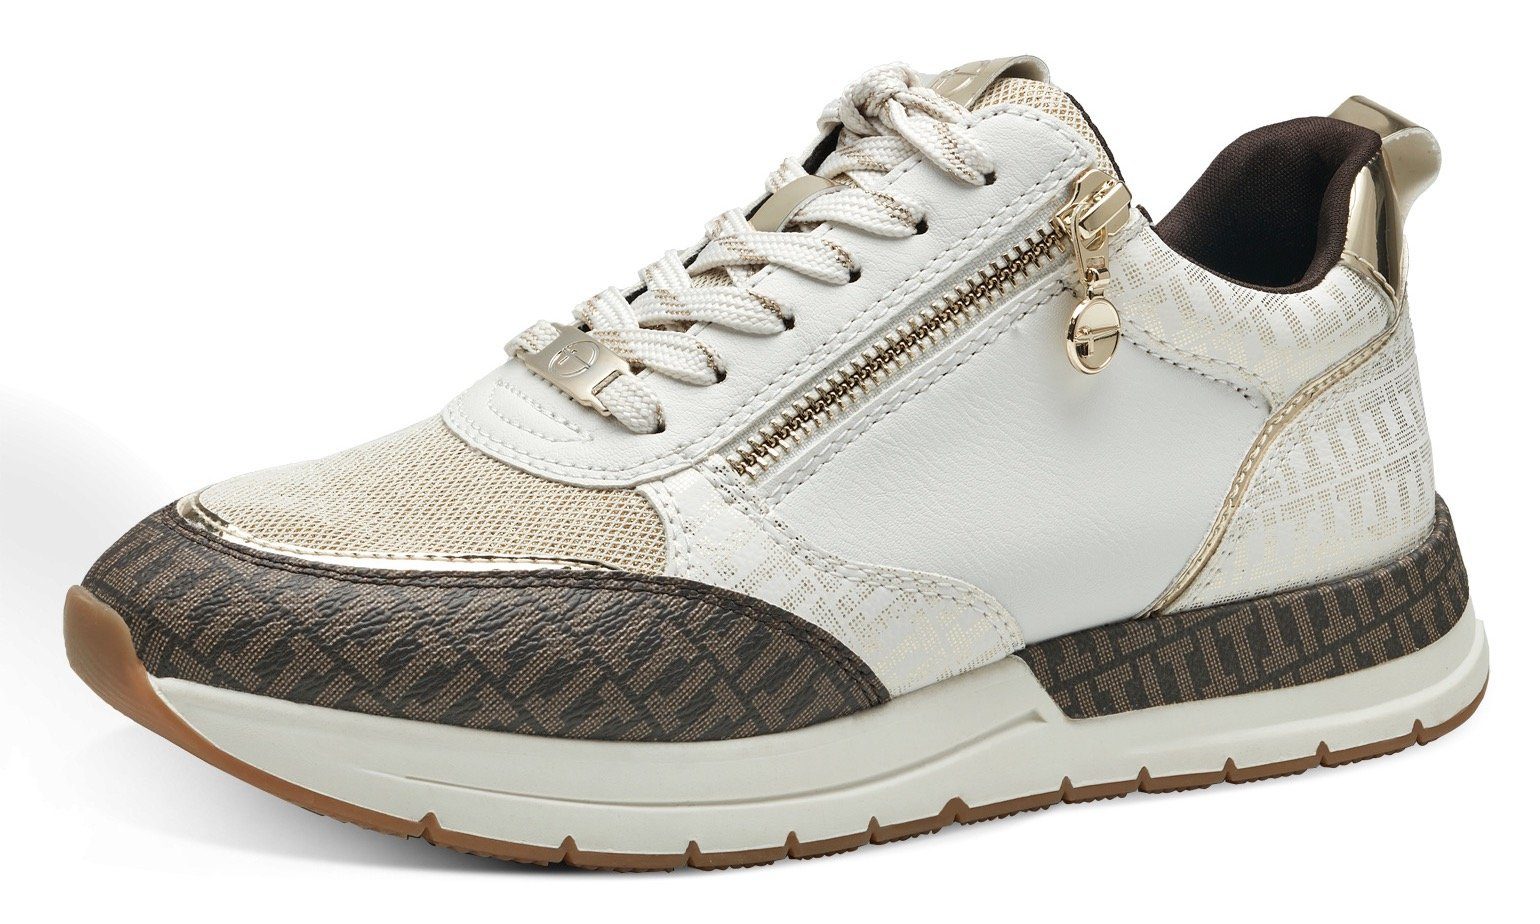 kombiniert Sneaker Metallic-Details offwhite Tamaris mit trendigen